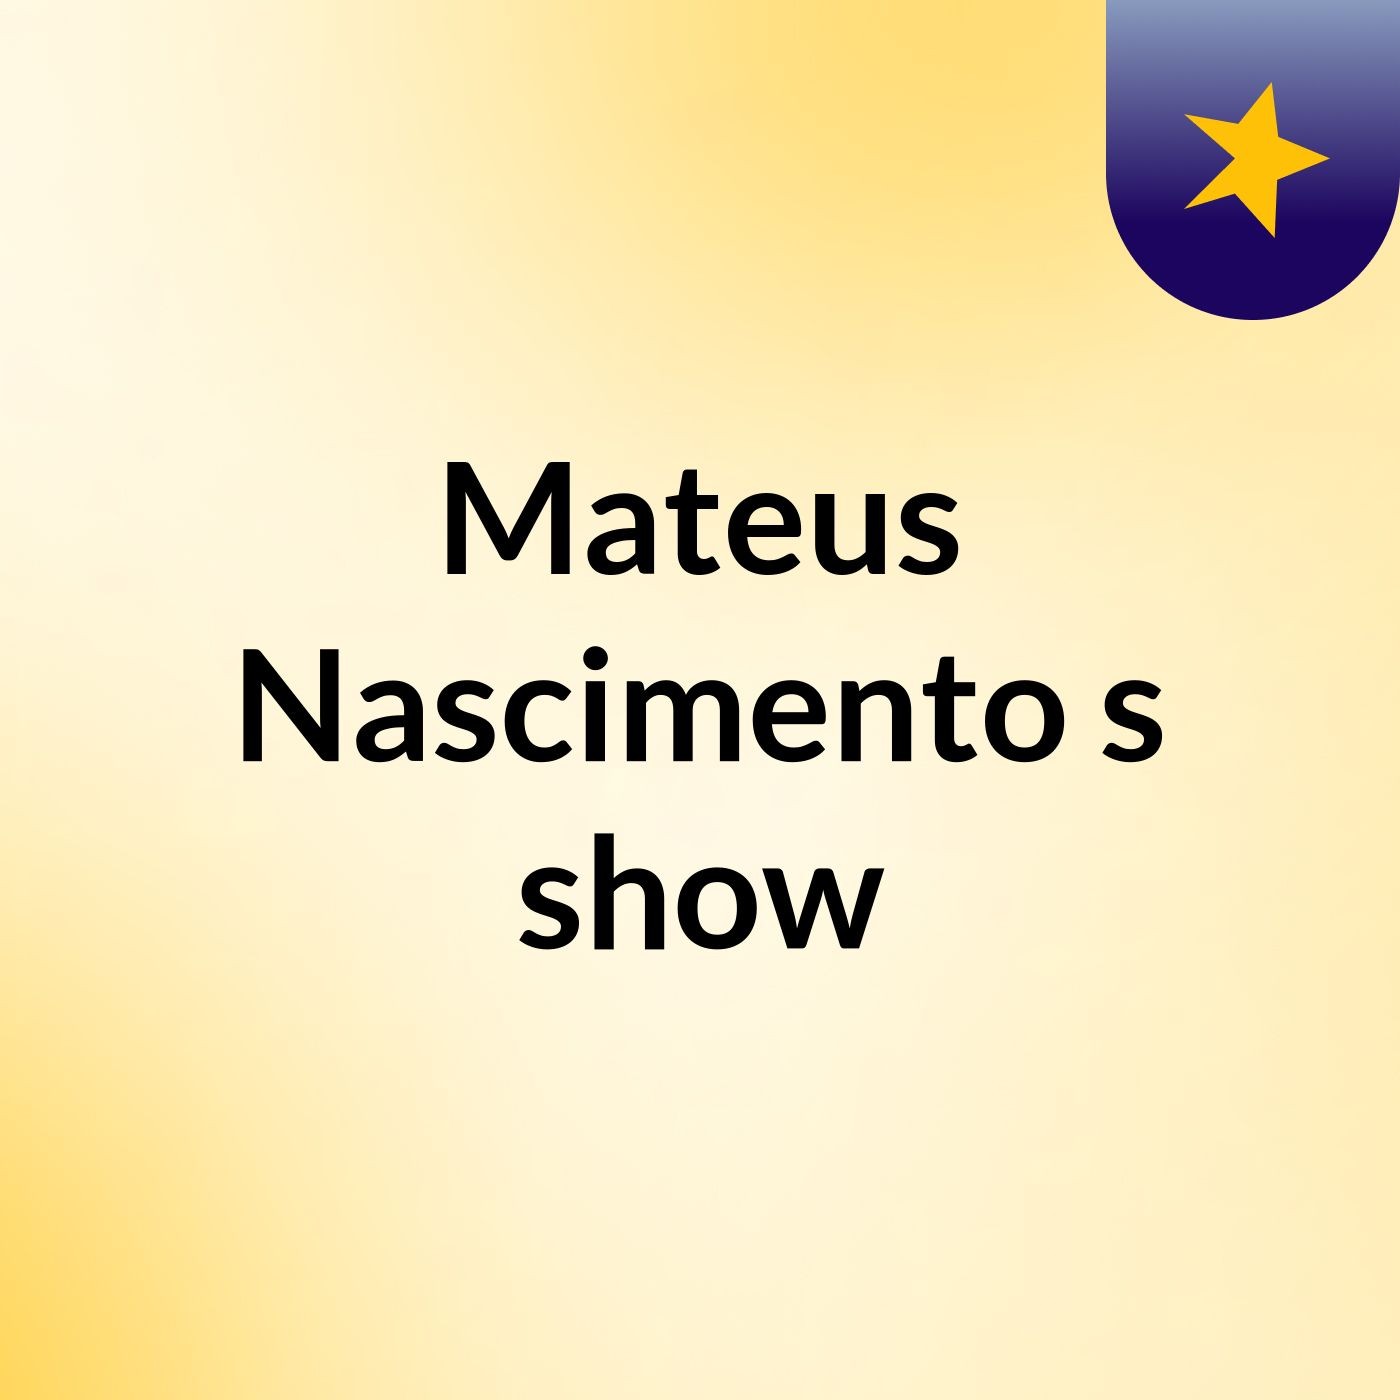 Mateus Nascimento's show